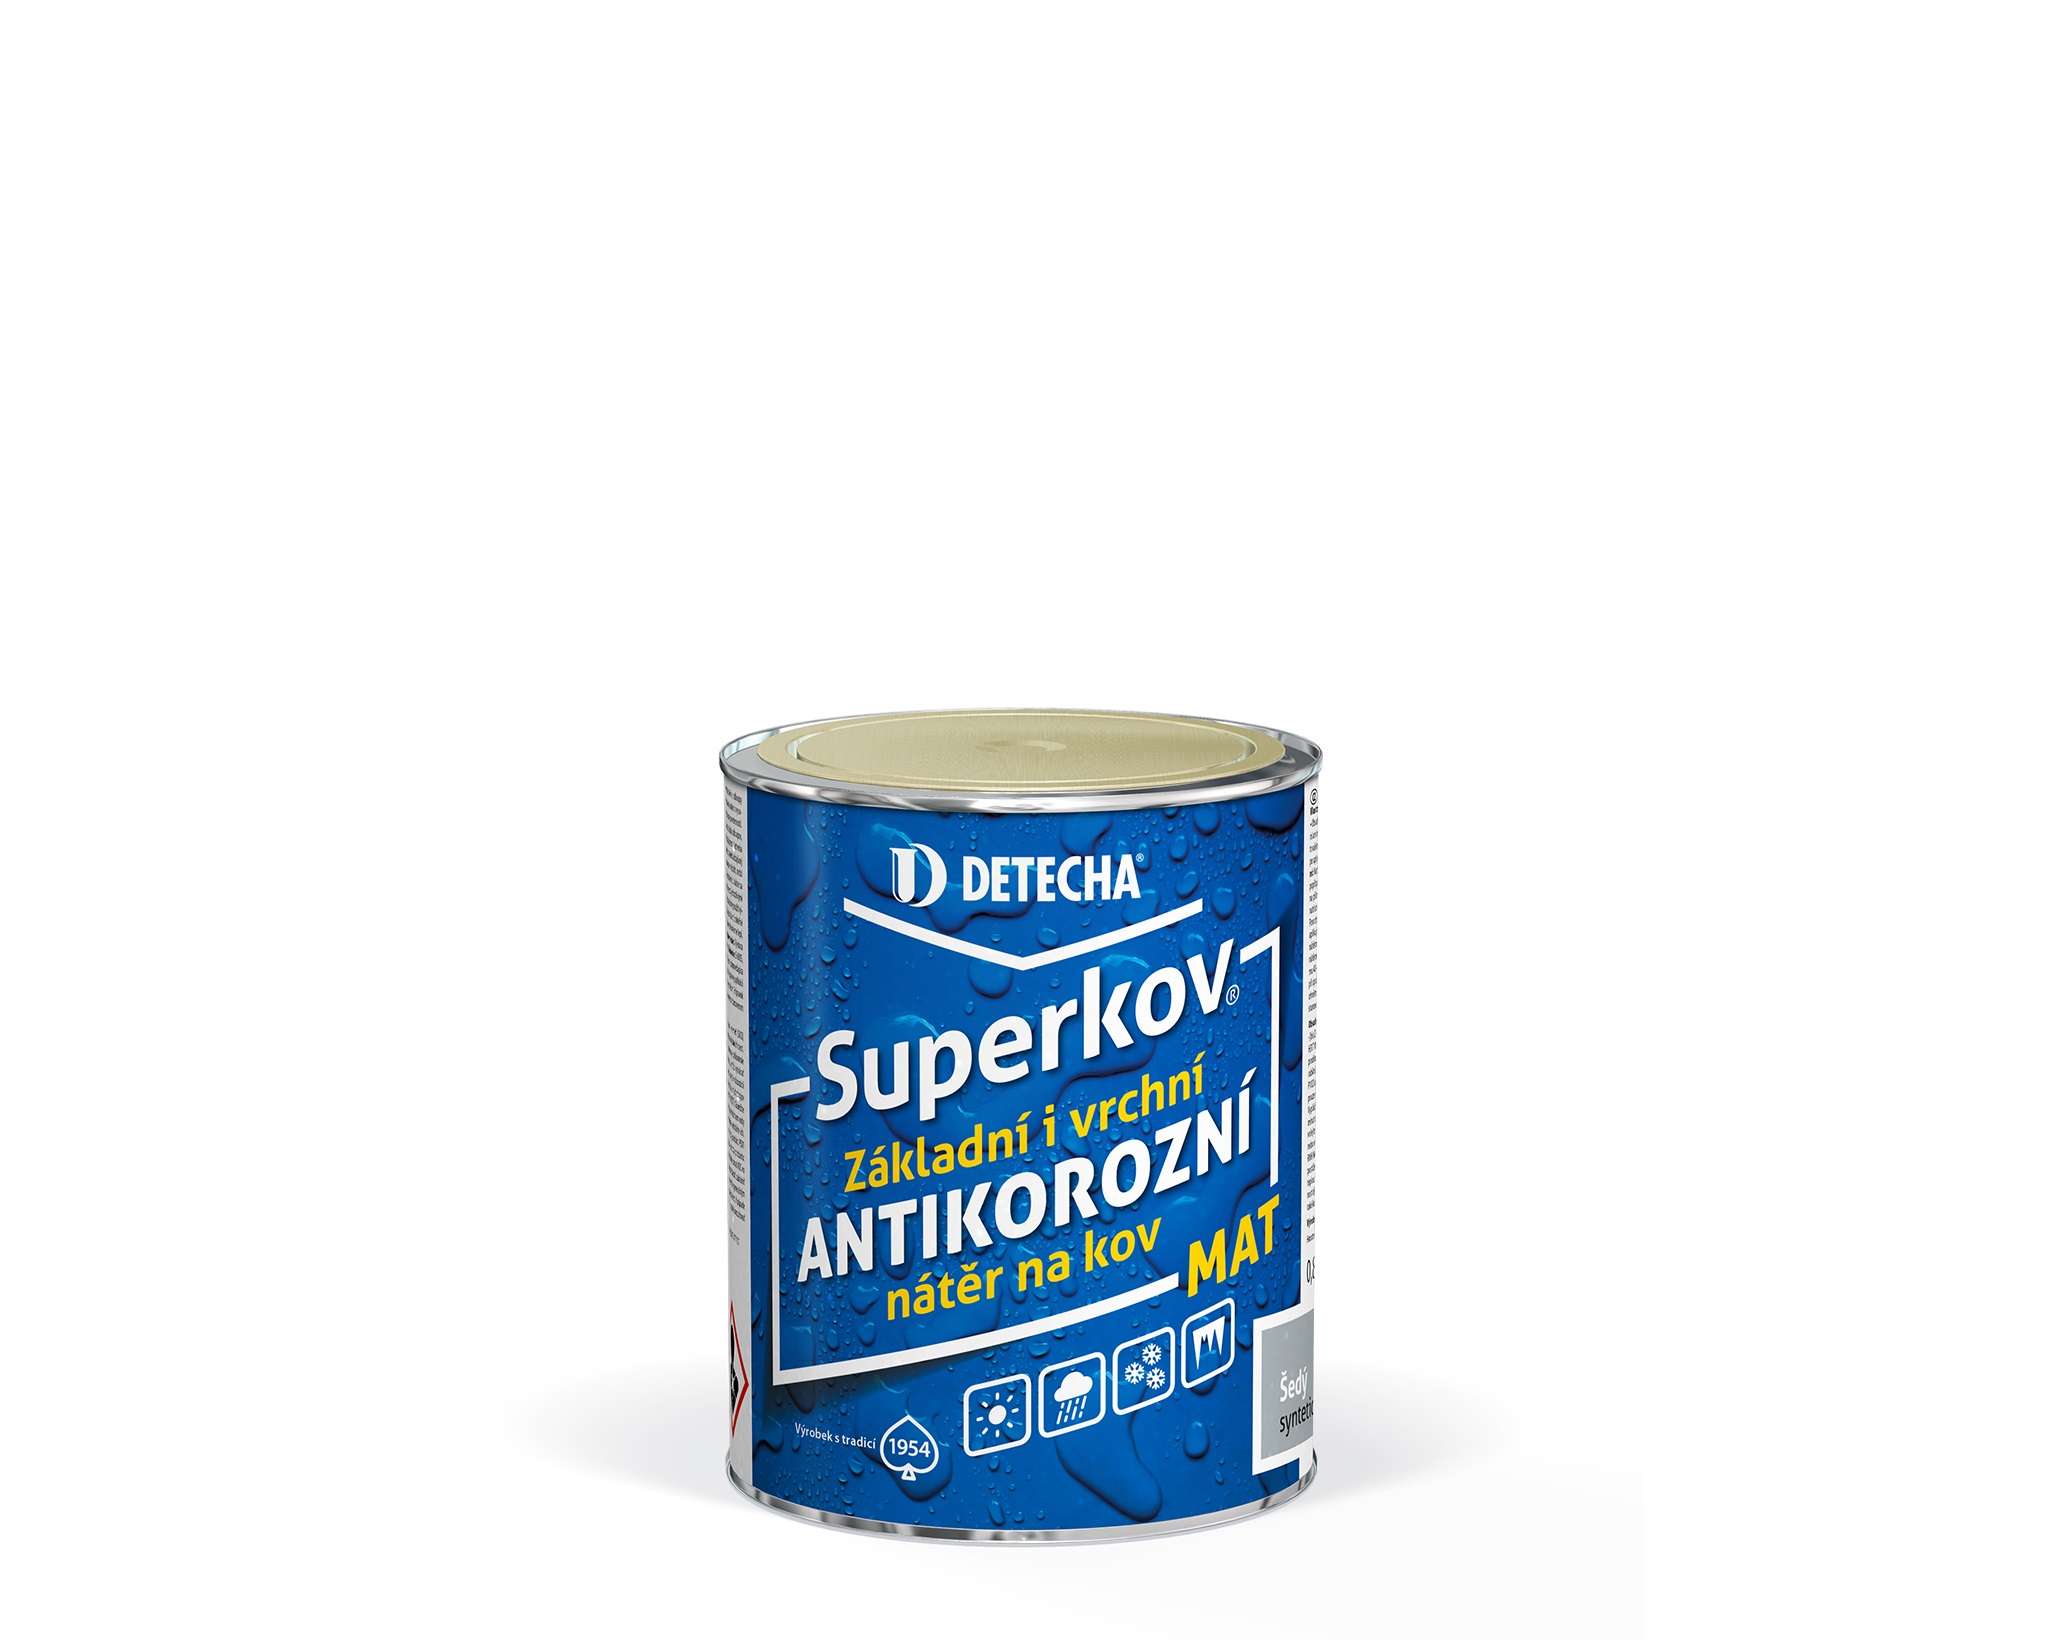 Detecha Superkov mat * Základní i vrchní antikorozní syntetická barva na kov. 1